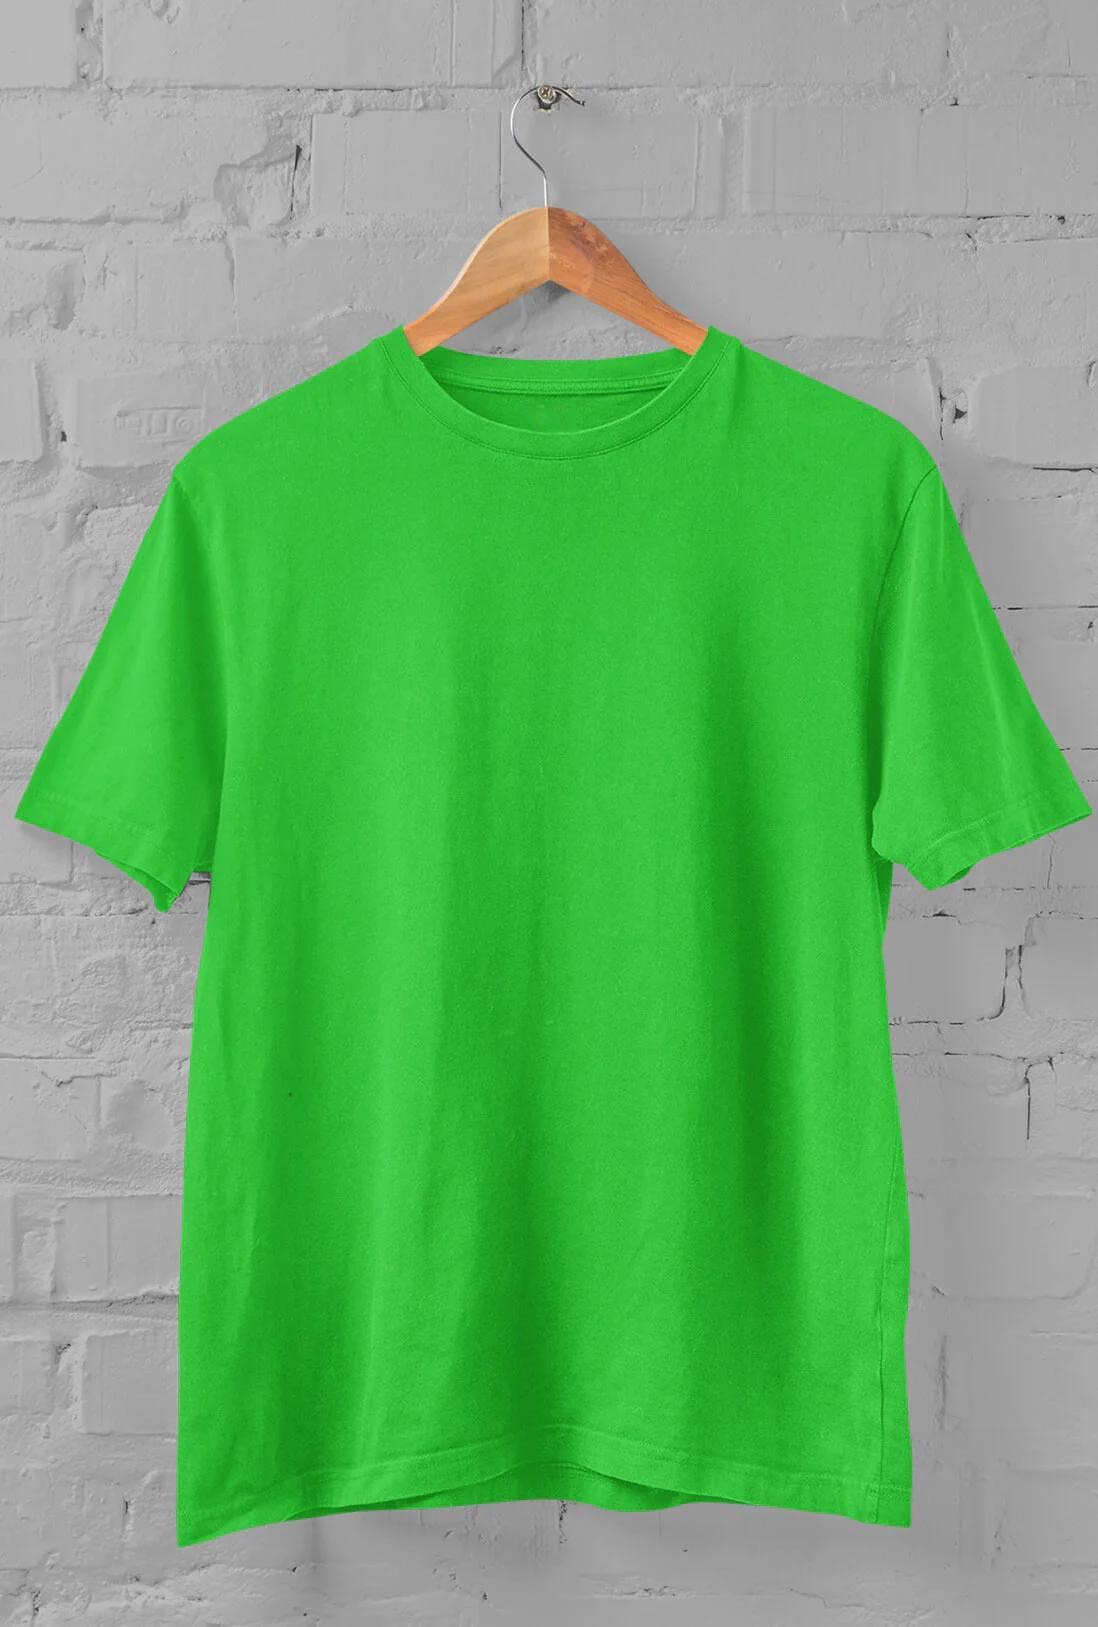 Men's Parrot Green Cotton T-Shirt